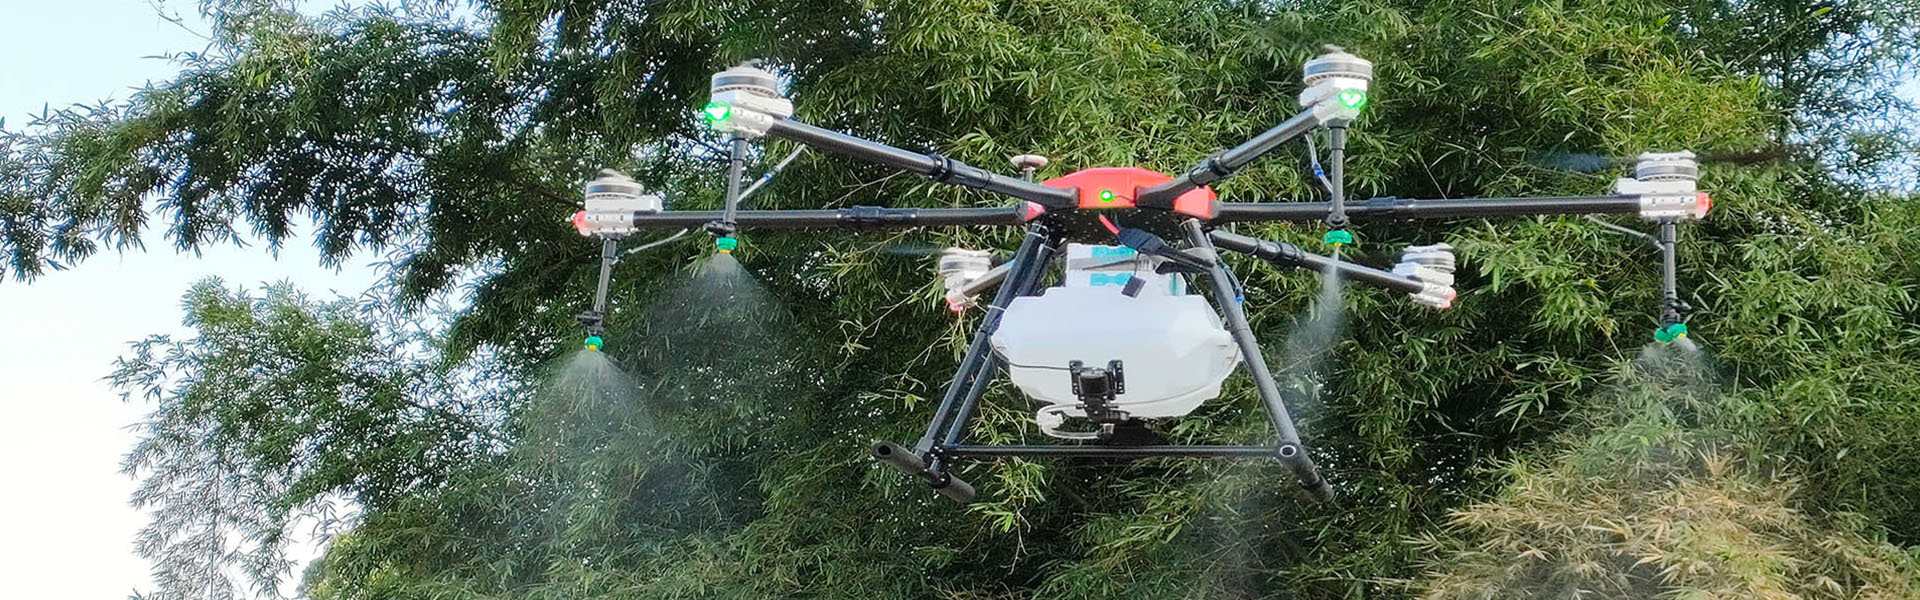 UAV agrícola, protección de plantas UAV, accesorios de UAV agrícolas,Shenzhen fnyuav technology co.LTD